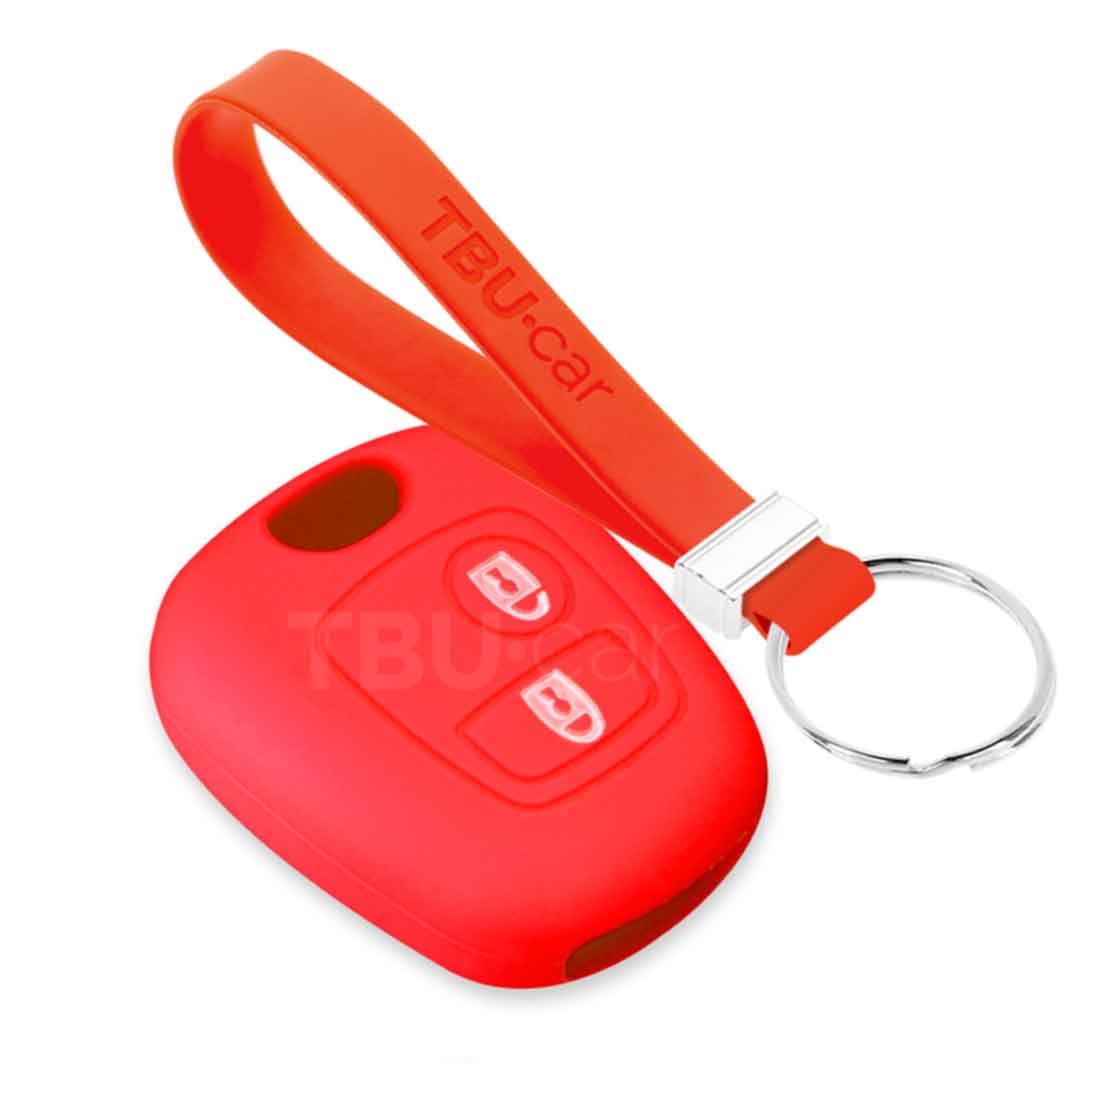 TBU car TBU car Housse de Protection clé compatible avec Citroën - Coque Cover Housse étui en Silicone - Rouge